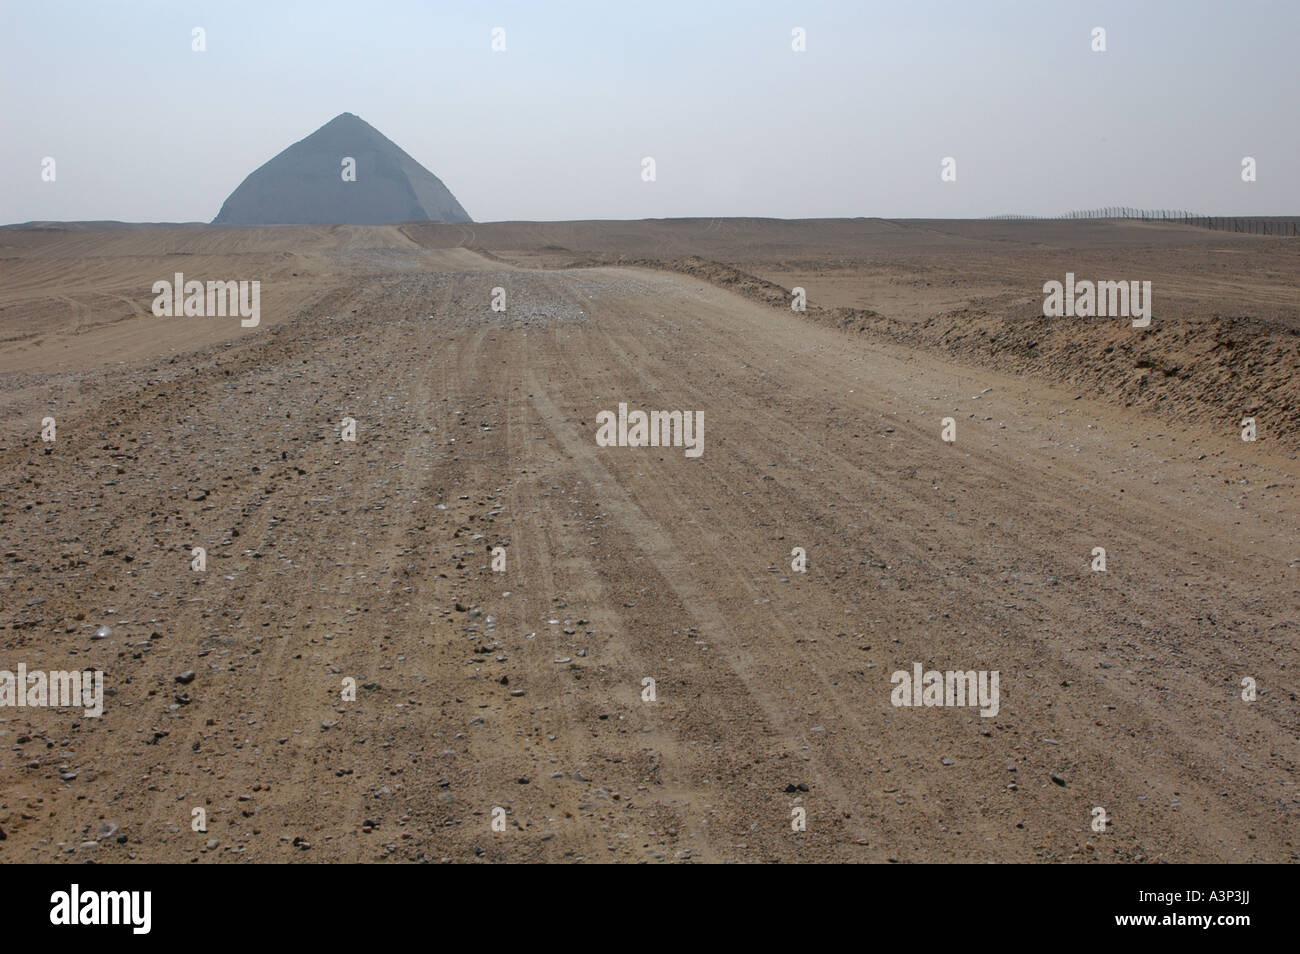 Piegato La piramide di Snofru a Dahshur vicino al Cairo in Egitto. Foto Stock